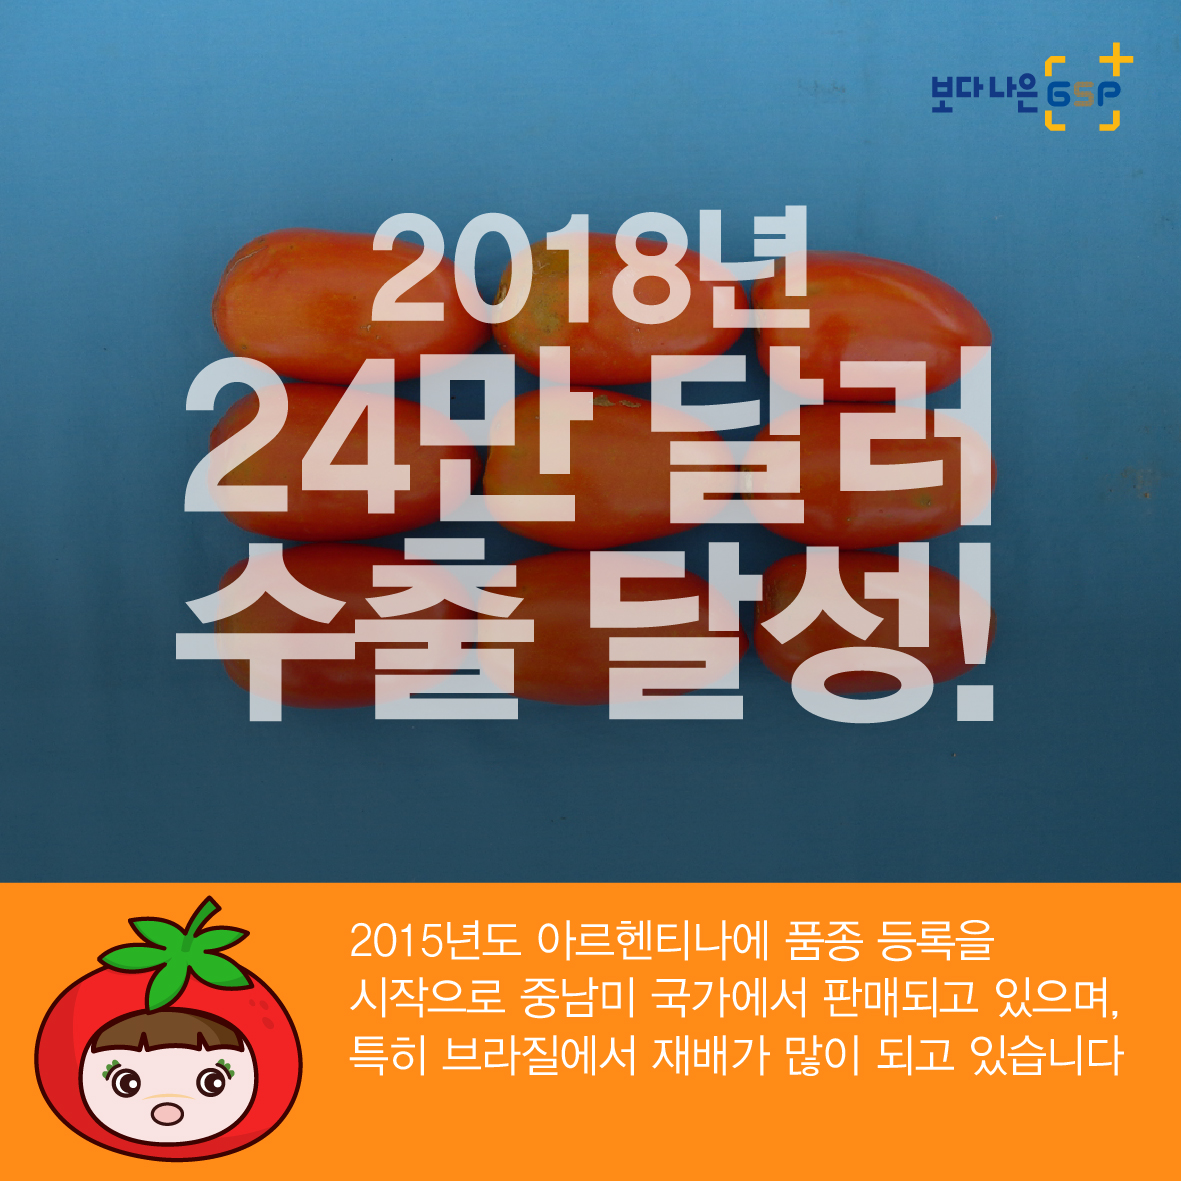 친절한 종자씨가 알려주는 GSP 품종뉴스 - 토마토편 4월_토마토편_05.jpg